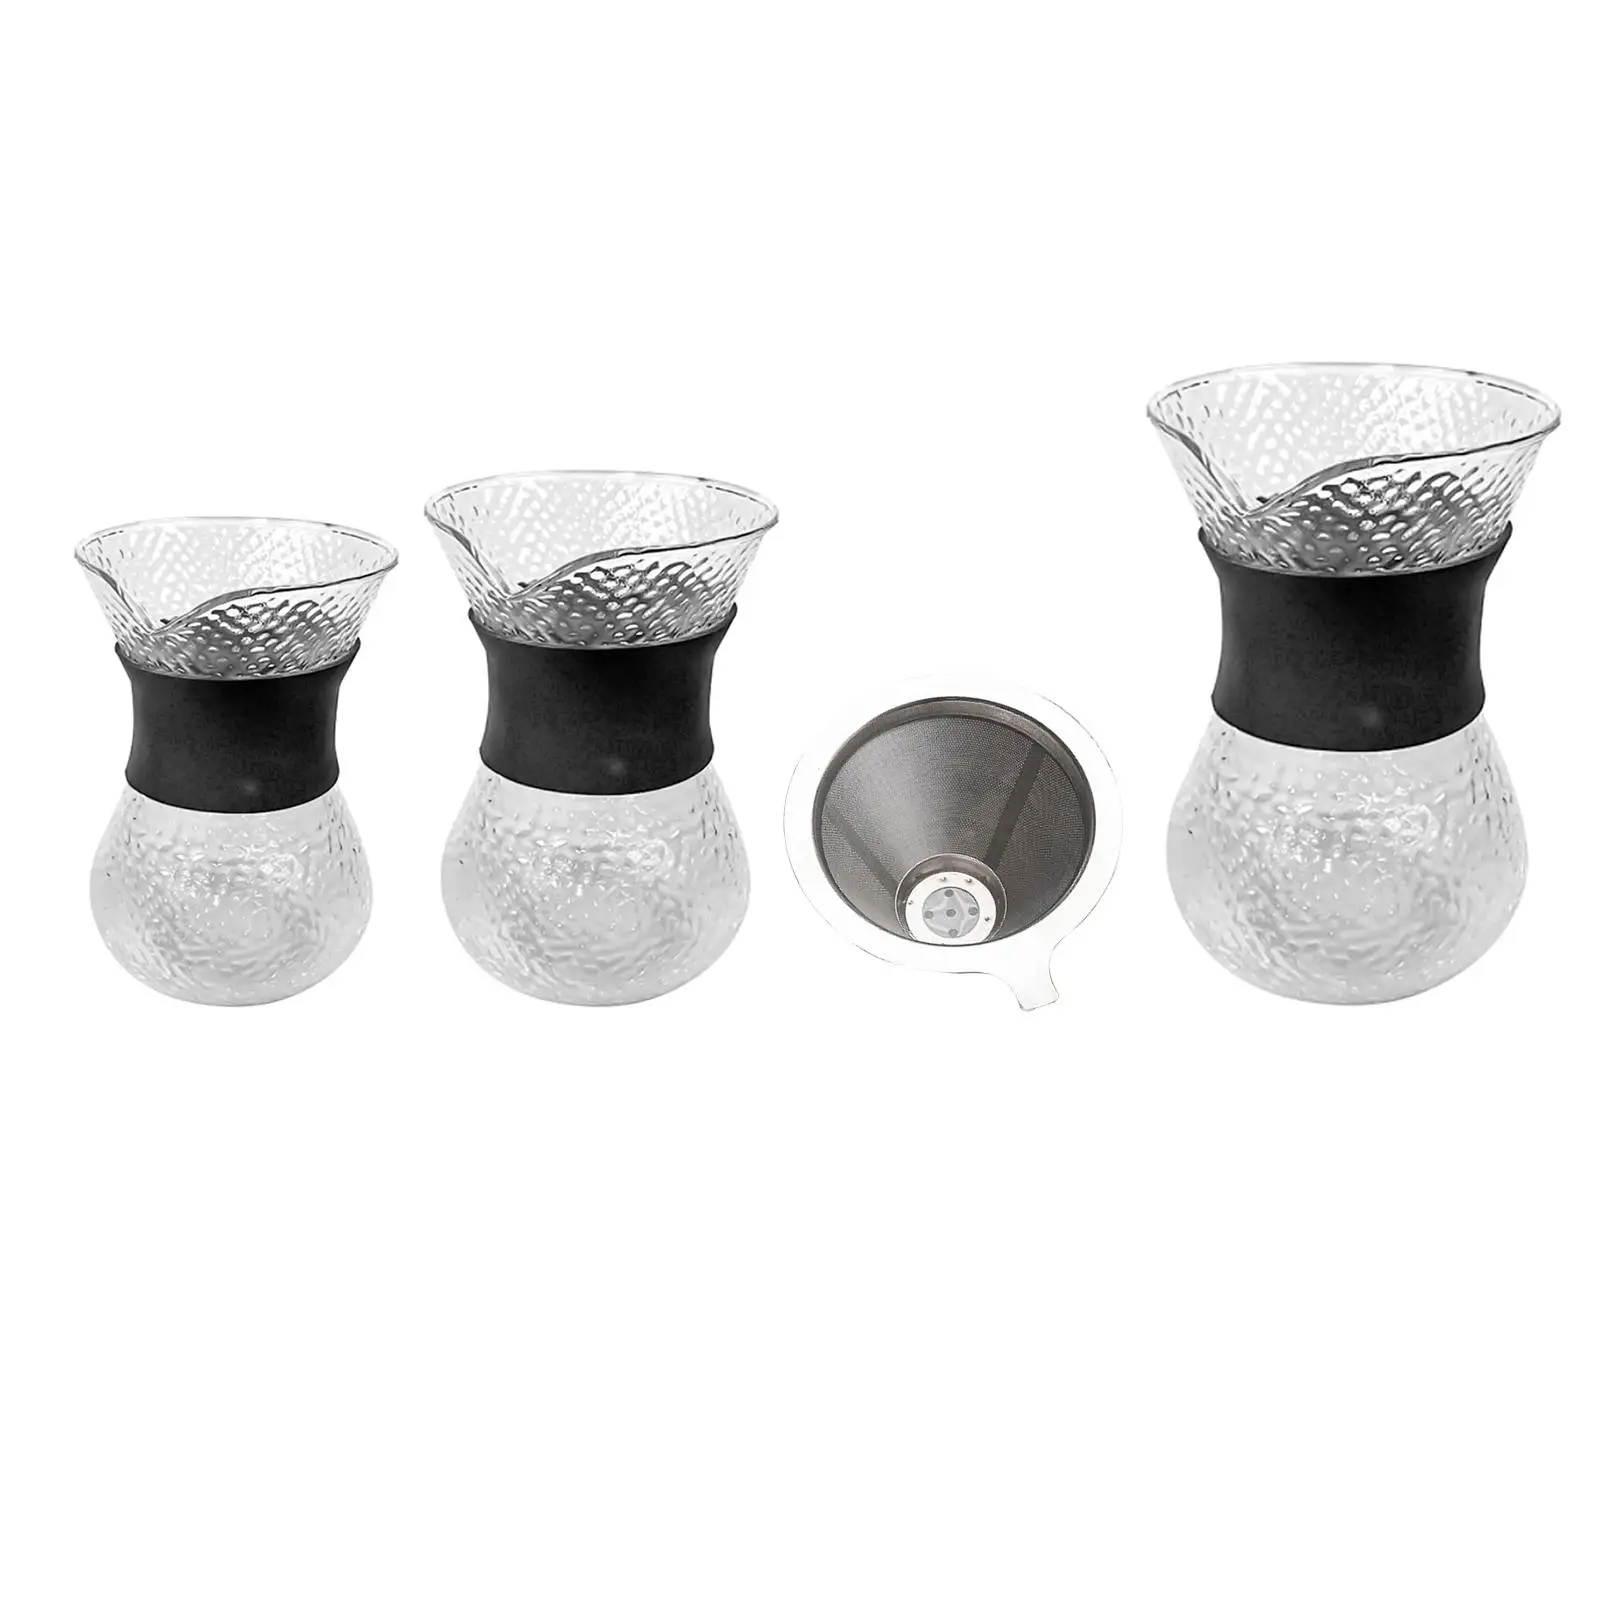 Кофеварка многоразового использования, термостойкая для рук, Стеклянная кофеварка с защитой от ожогов, Кофеварка для холодного заваривания в графине